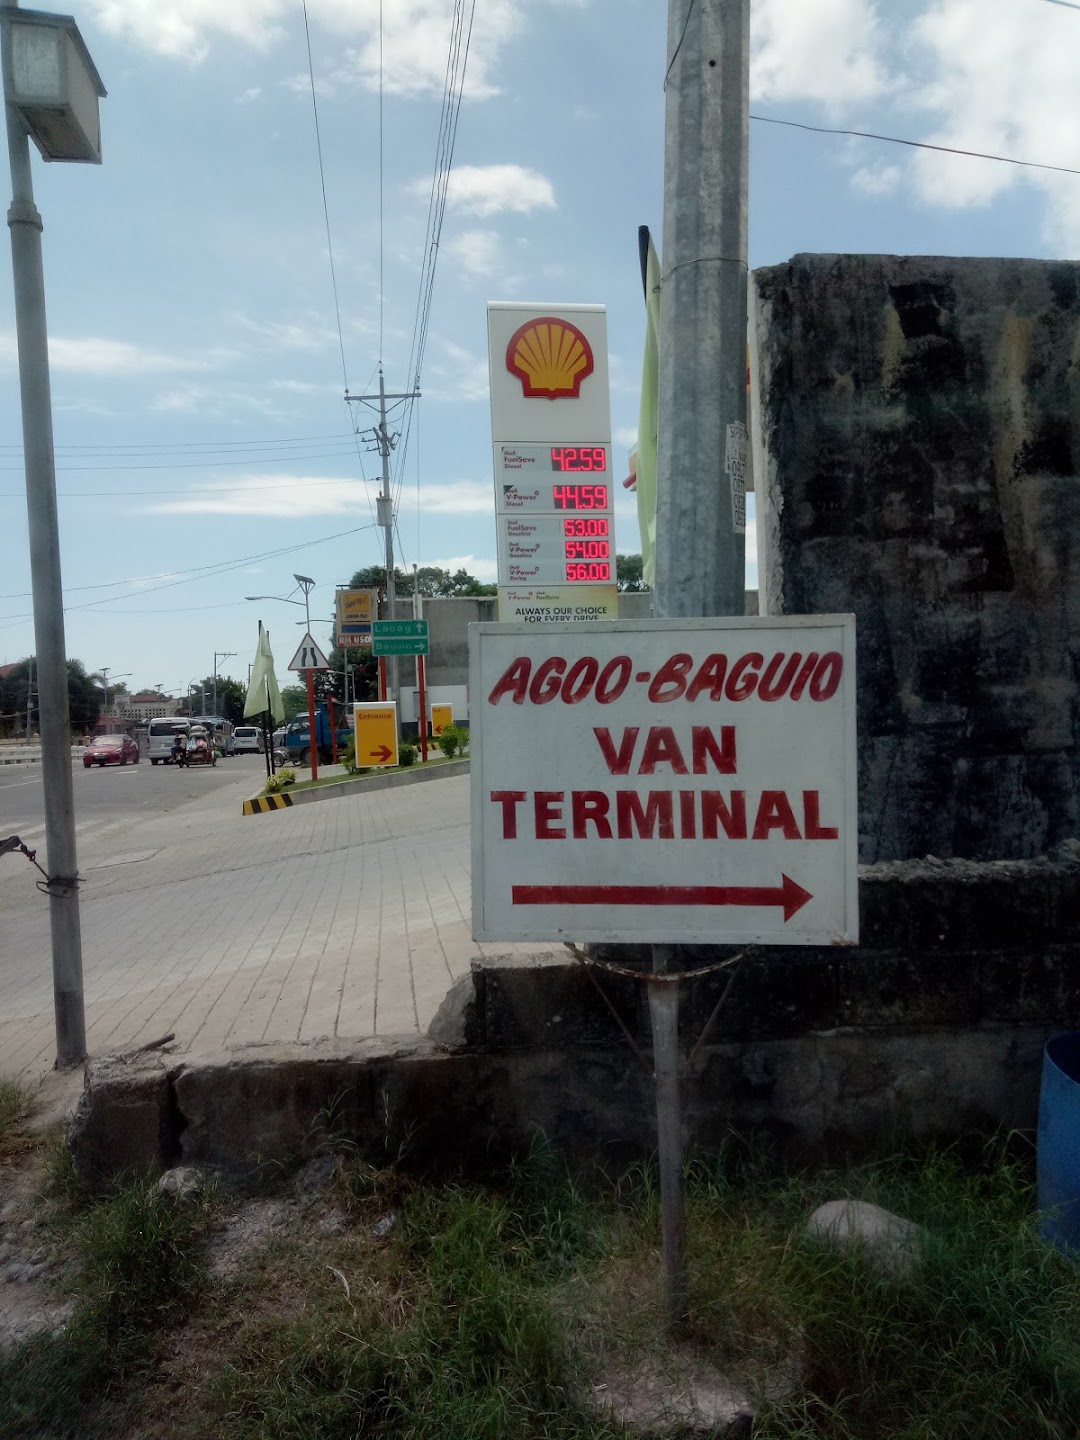 Agoo-Baguio Van Station